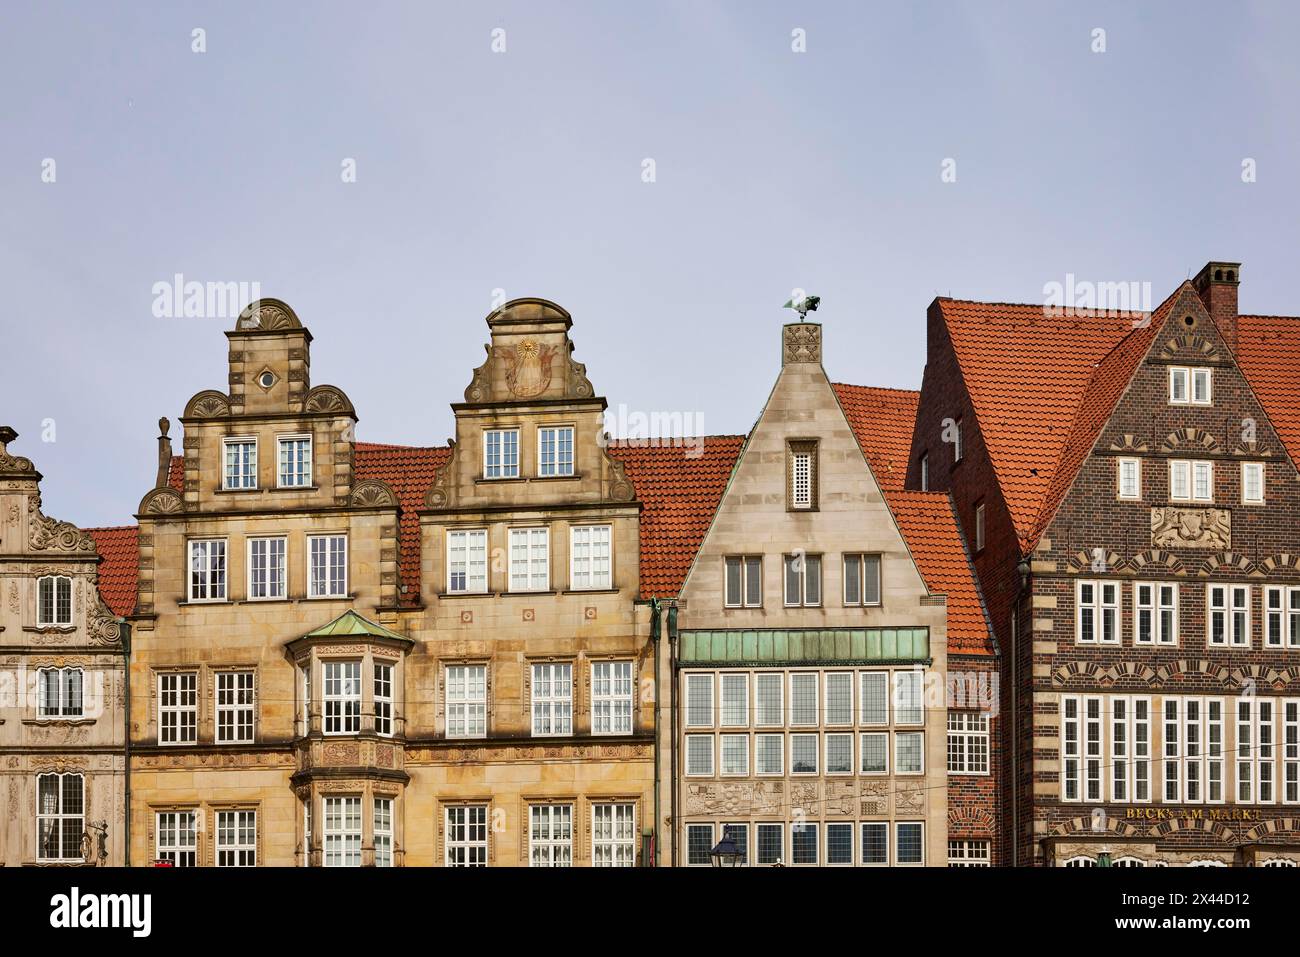 Pignons de bâtiments protégés par le patrimoine sur le côté nord-ouest de la place du marché de Brême à Brême, ville hanséatique, État fédéral de Brême, Allemagne Banque D'Images